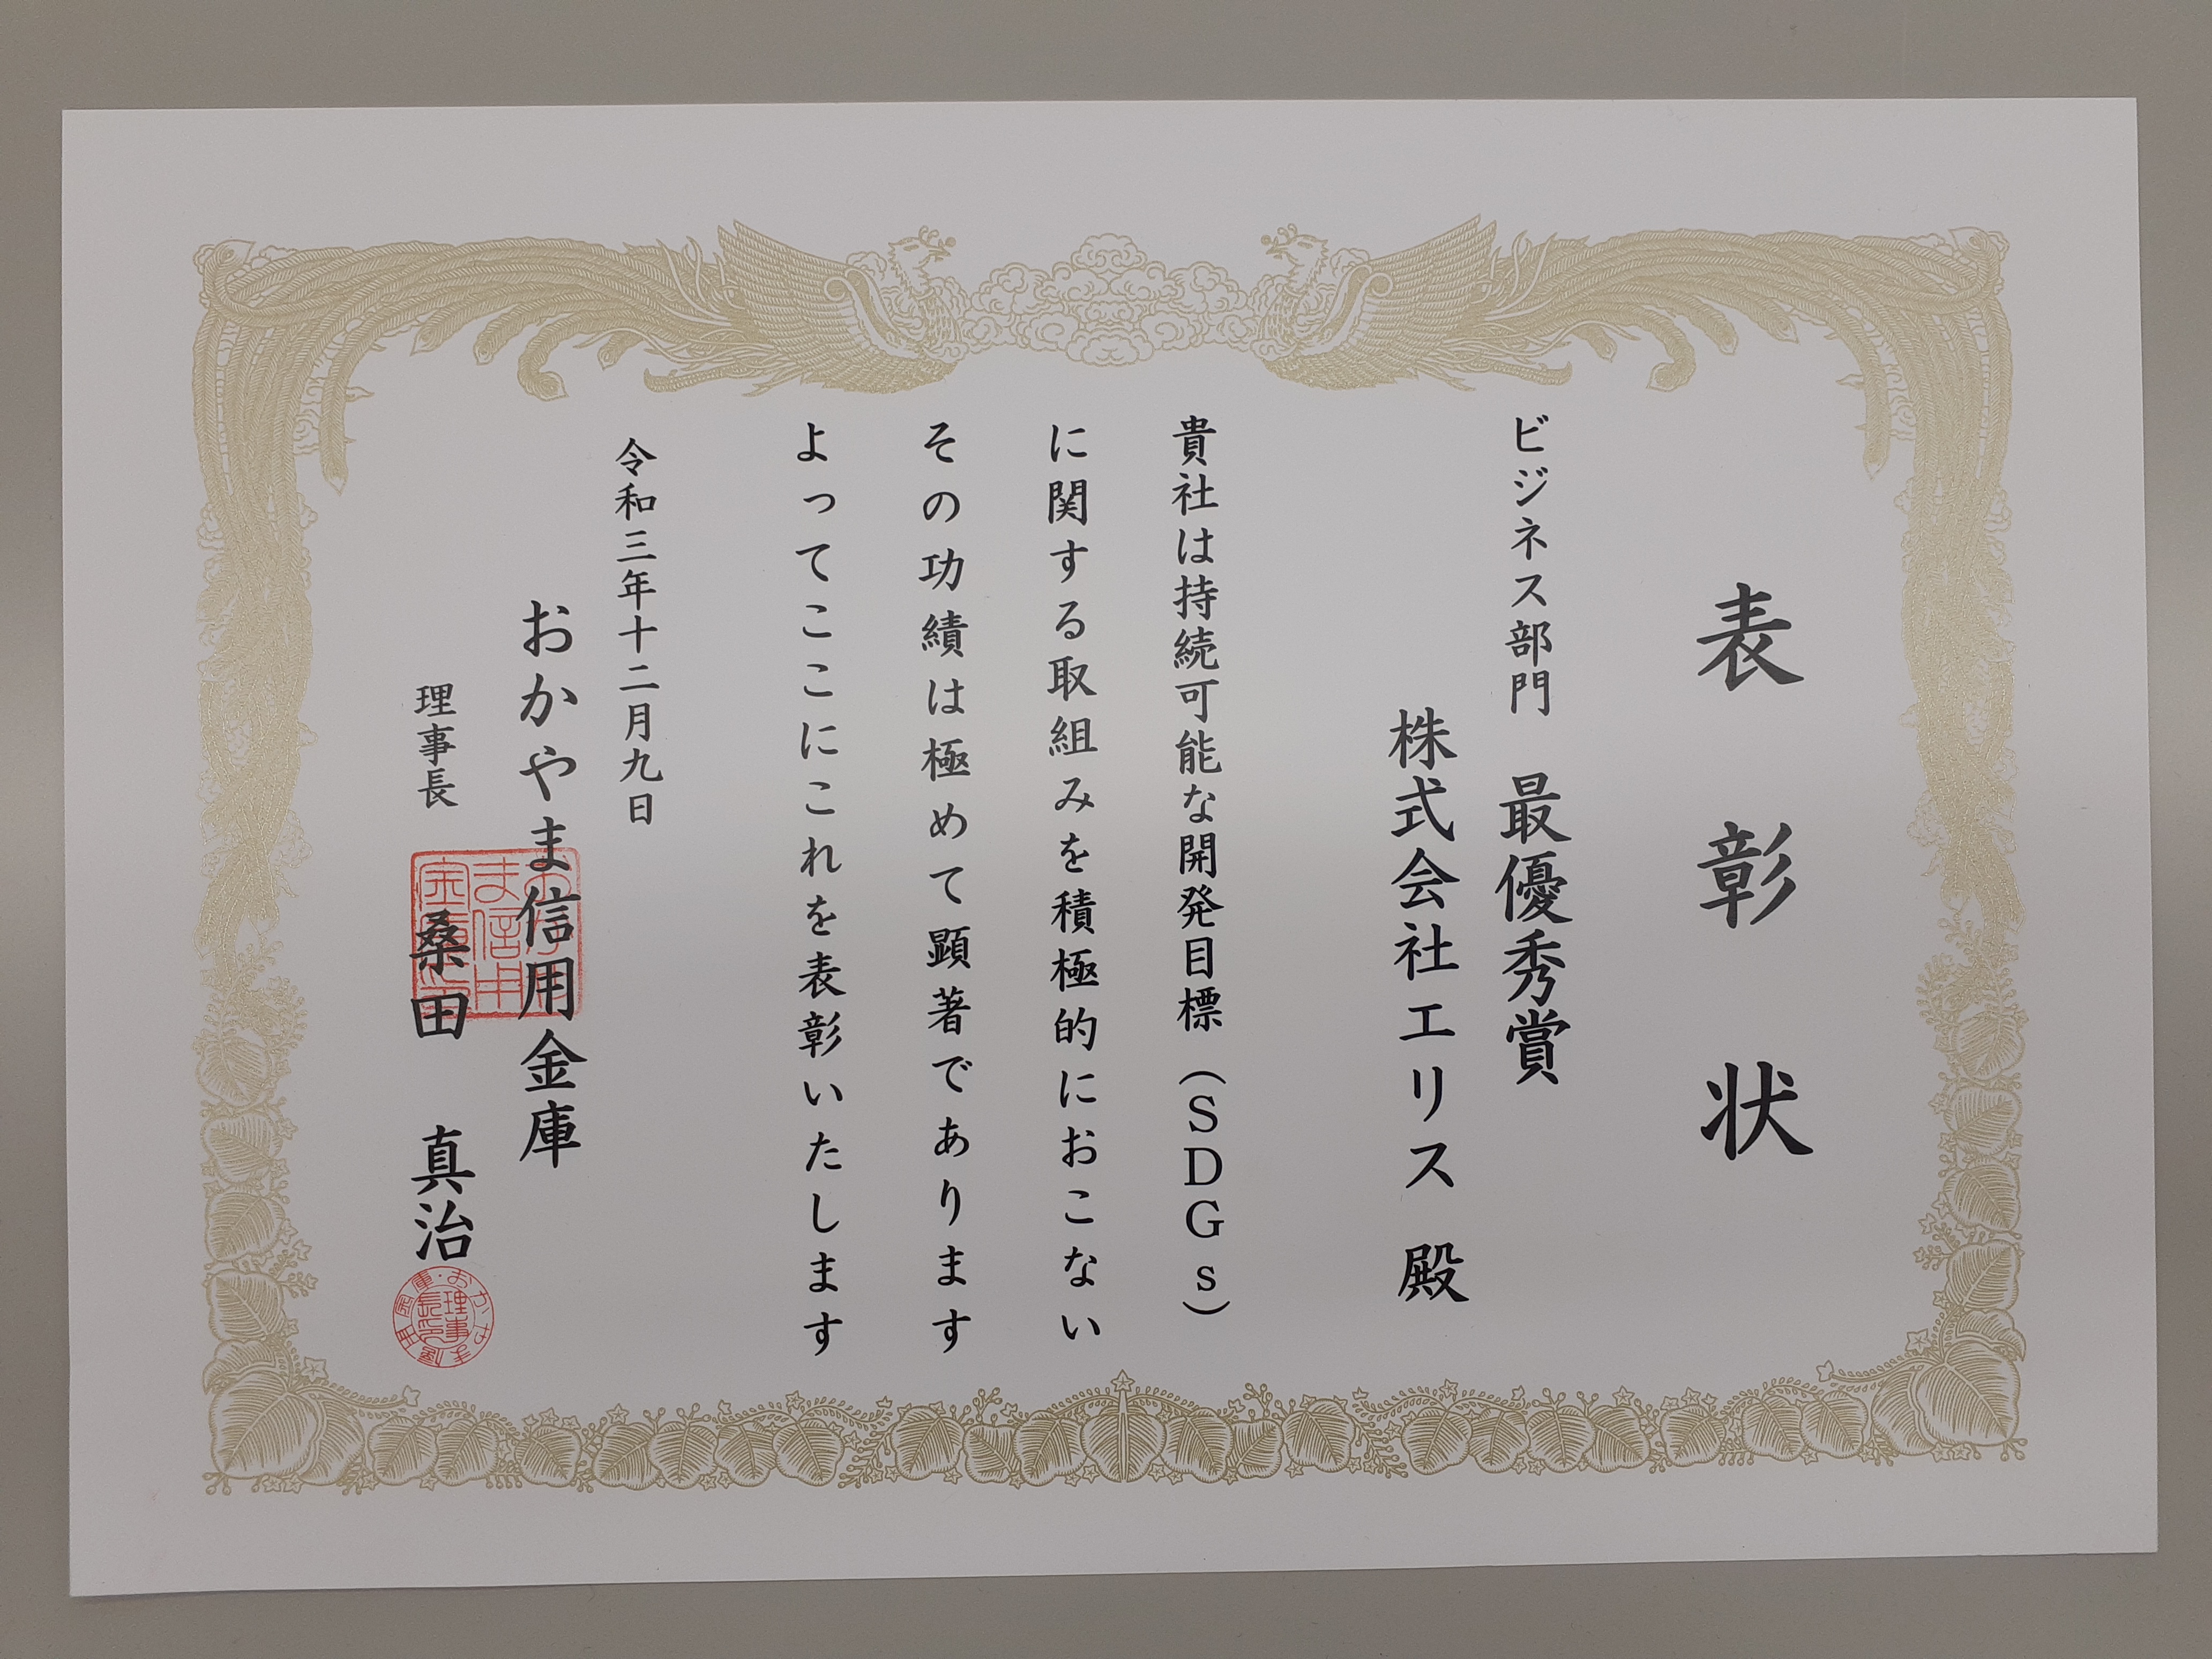 Okyama Shinkin Bank Award Certificate